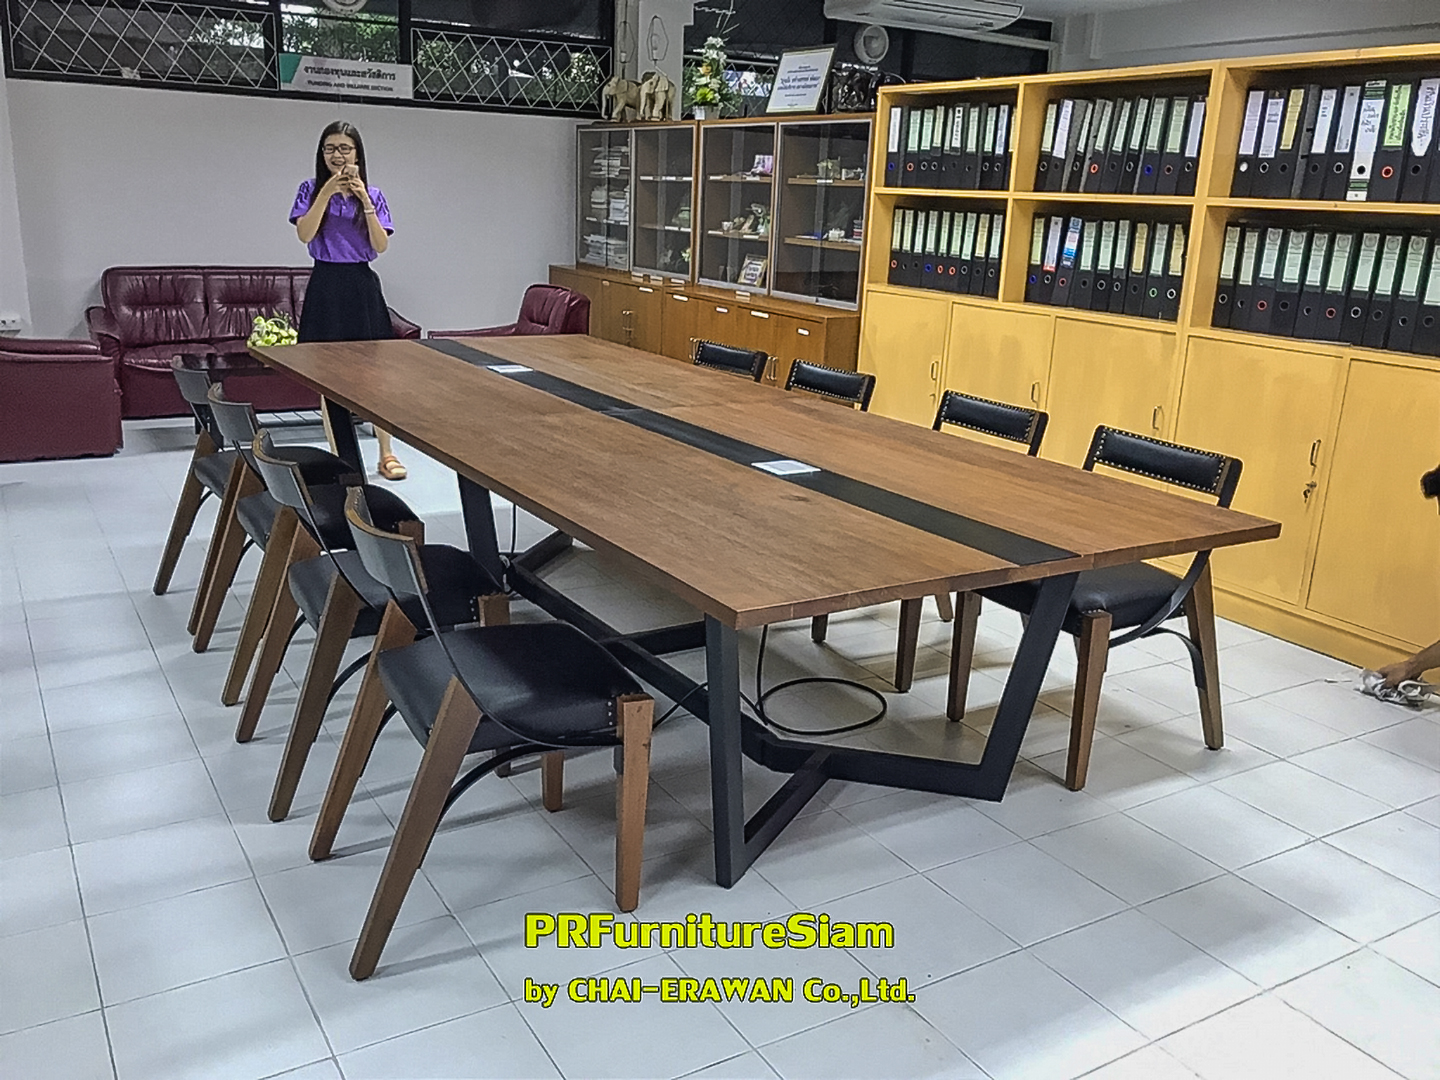 การติดตั้งชุดโต๊ะและเก้าอี้ประชุมไม้เนื้อแข็งที่มหาวิทยาลัยเชียงใหม่